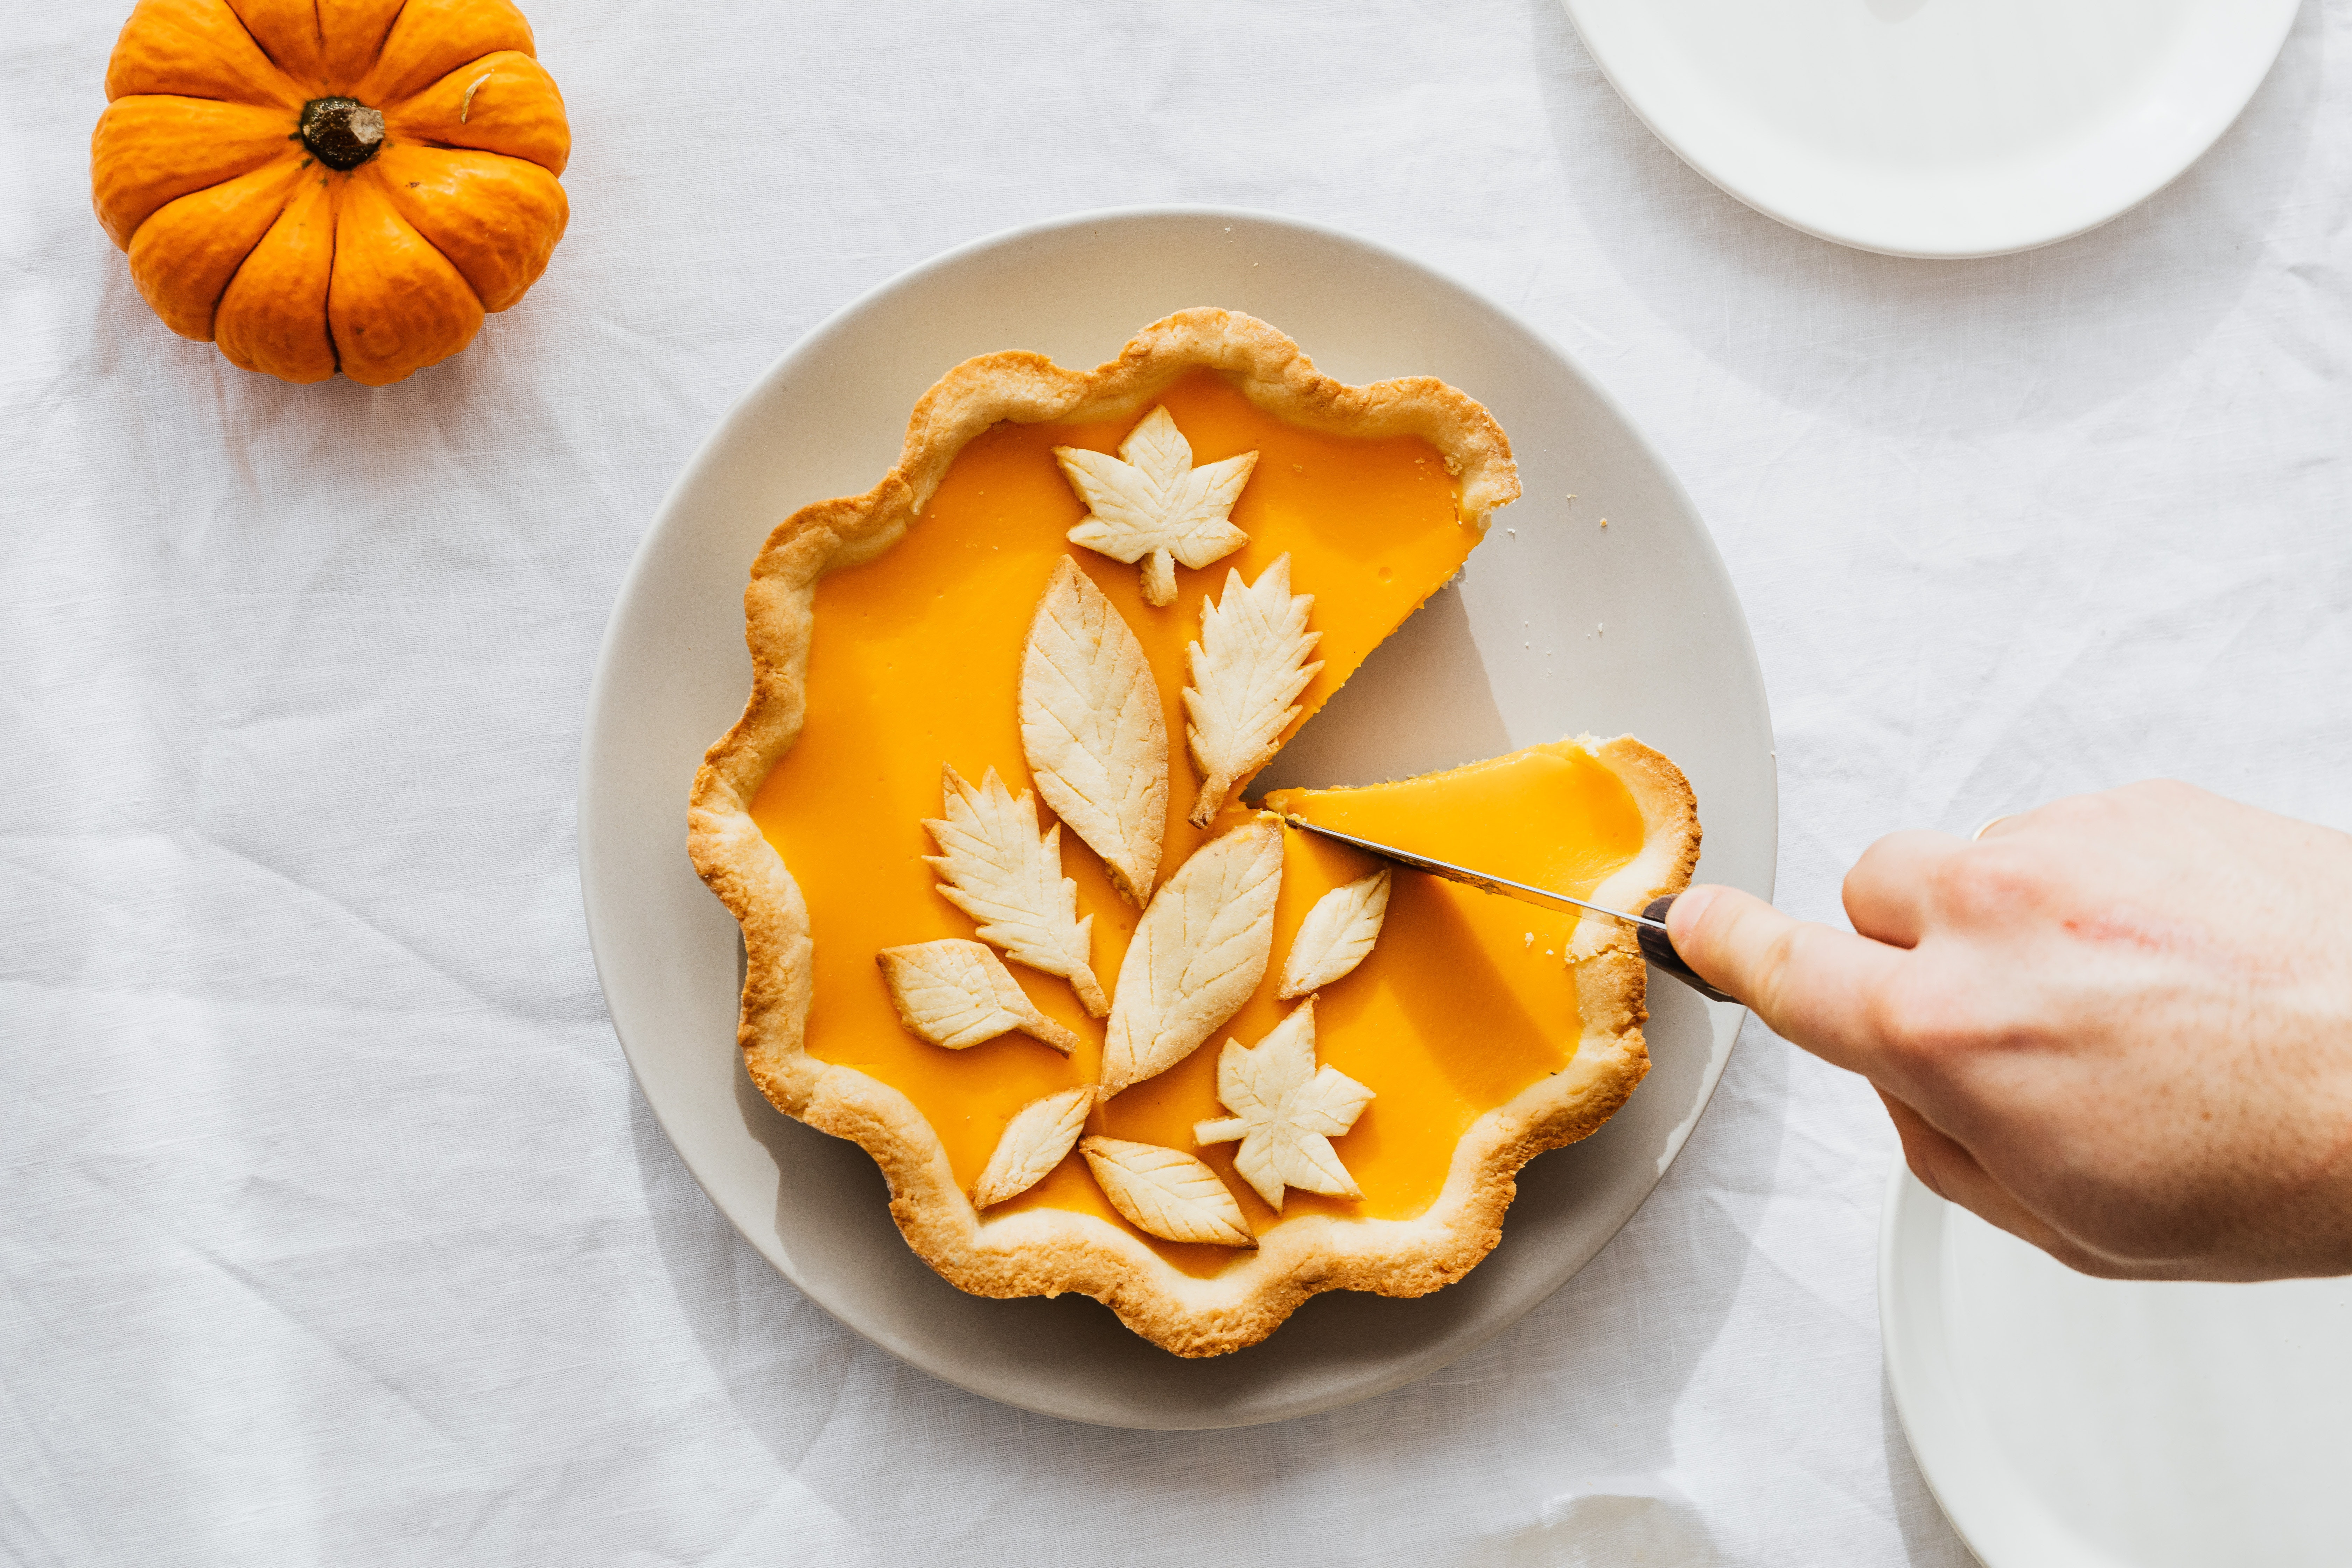 Cutting a pumpkin pie